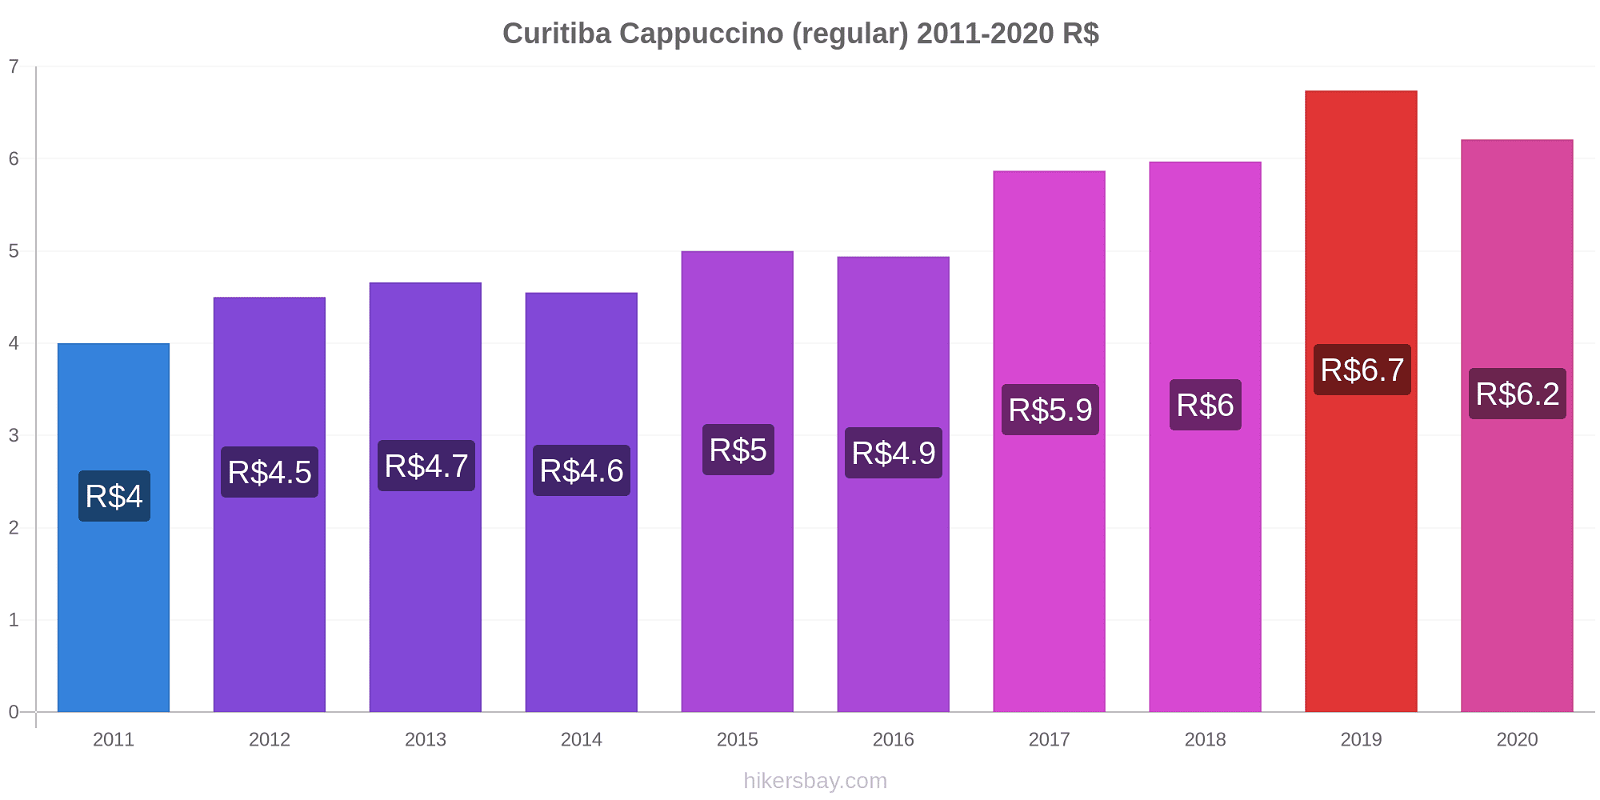 Curitiba variação de preço Capuccino (regular) hikersbay.com